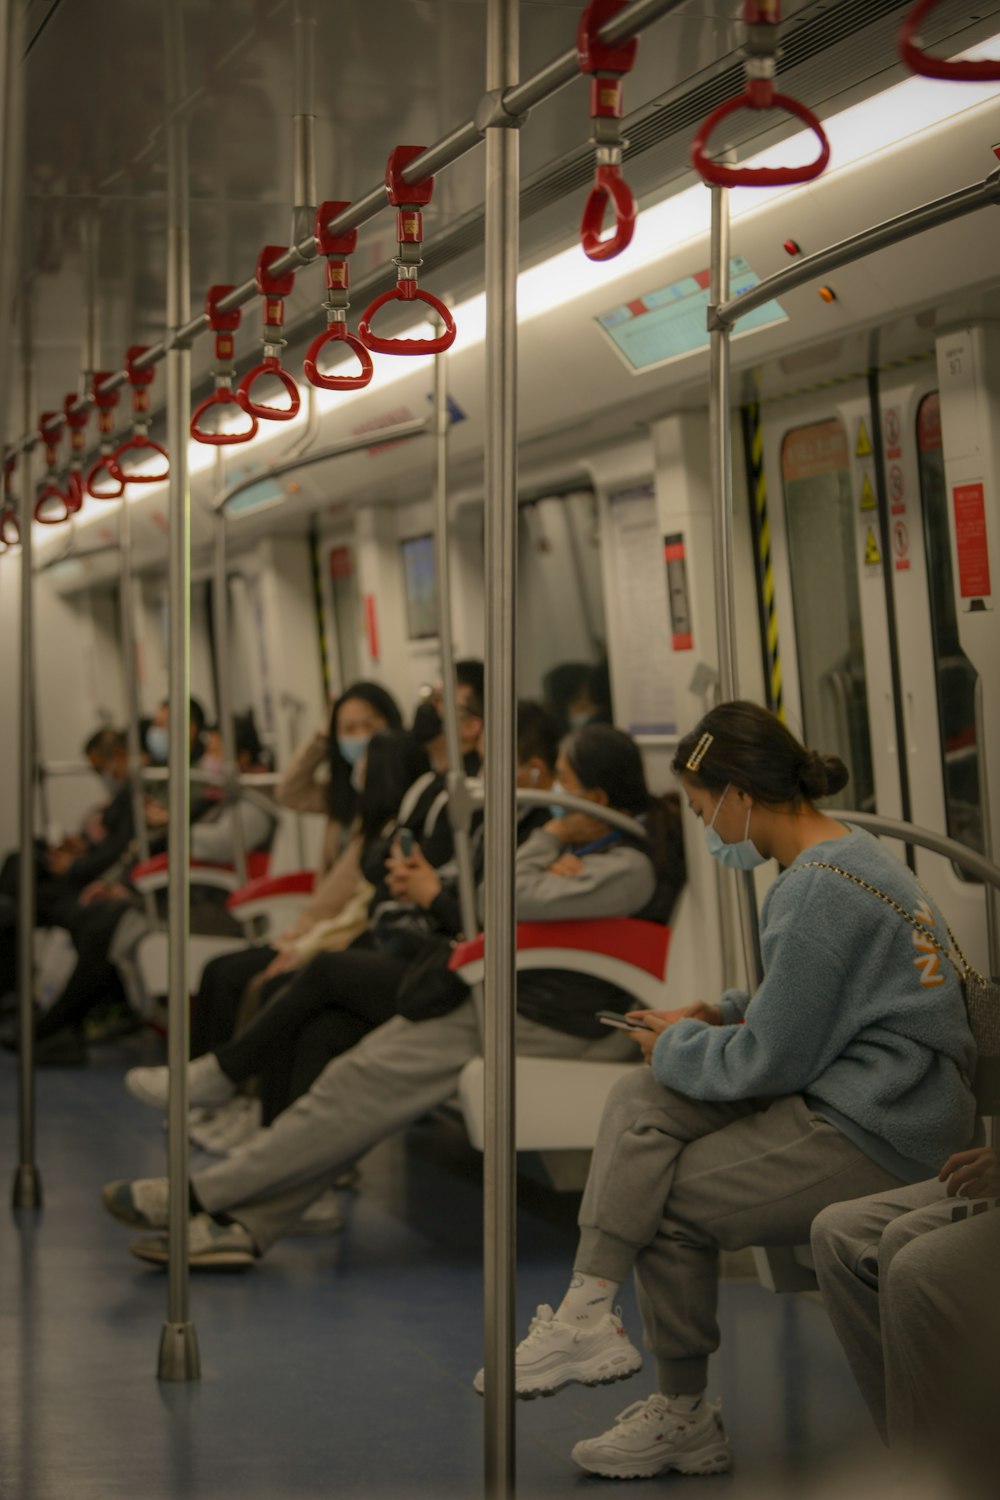 Un gruppo di persone sedute su un treno una accanto all'altra